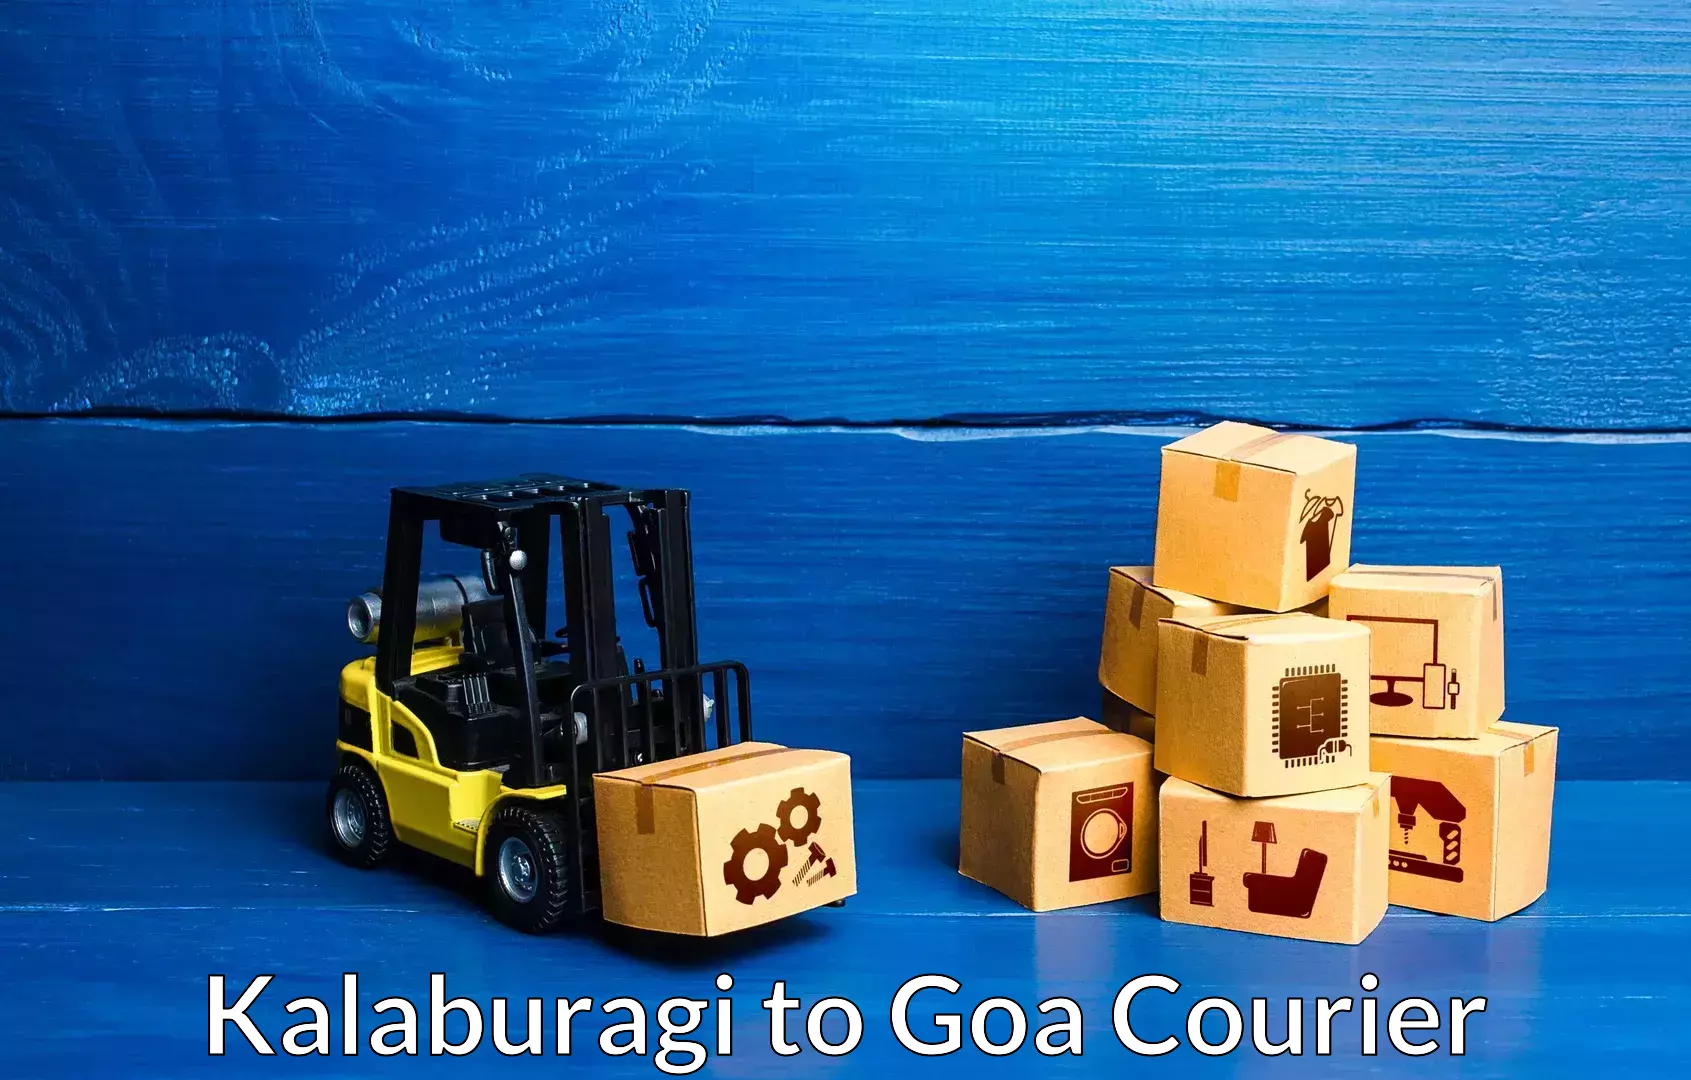 Efficient relocation services Kalaburagi to NIT Goa